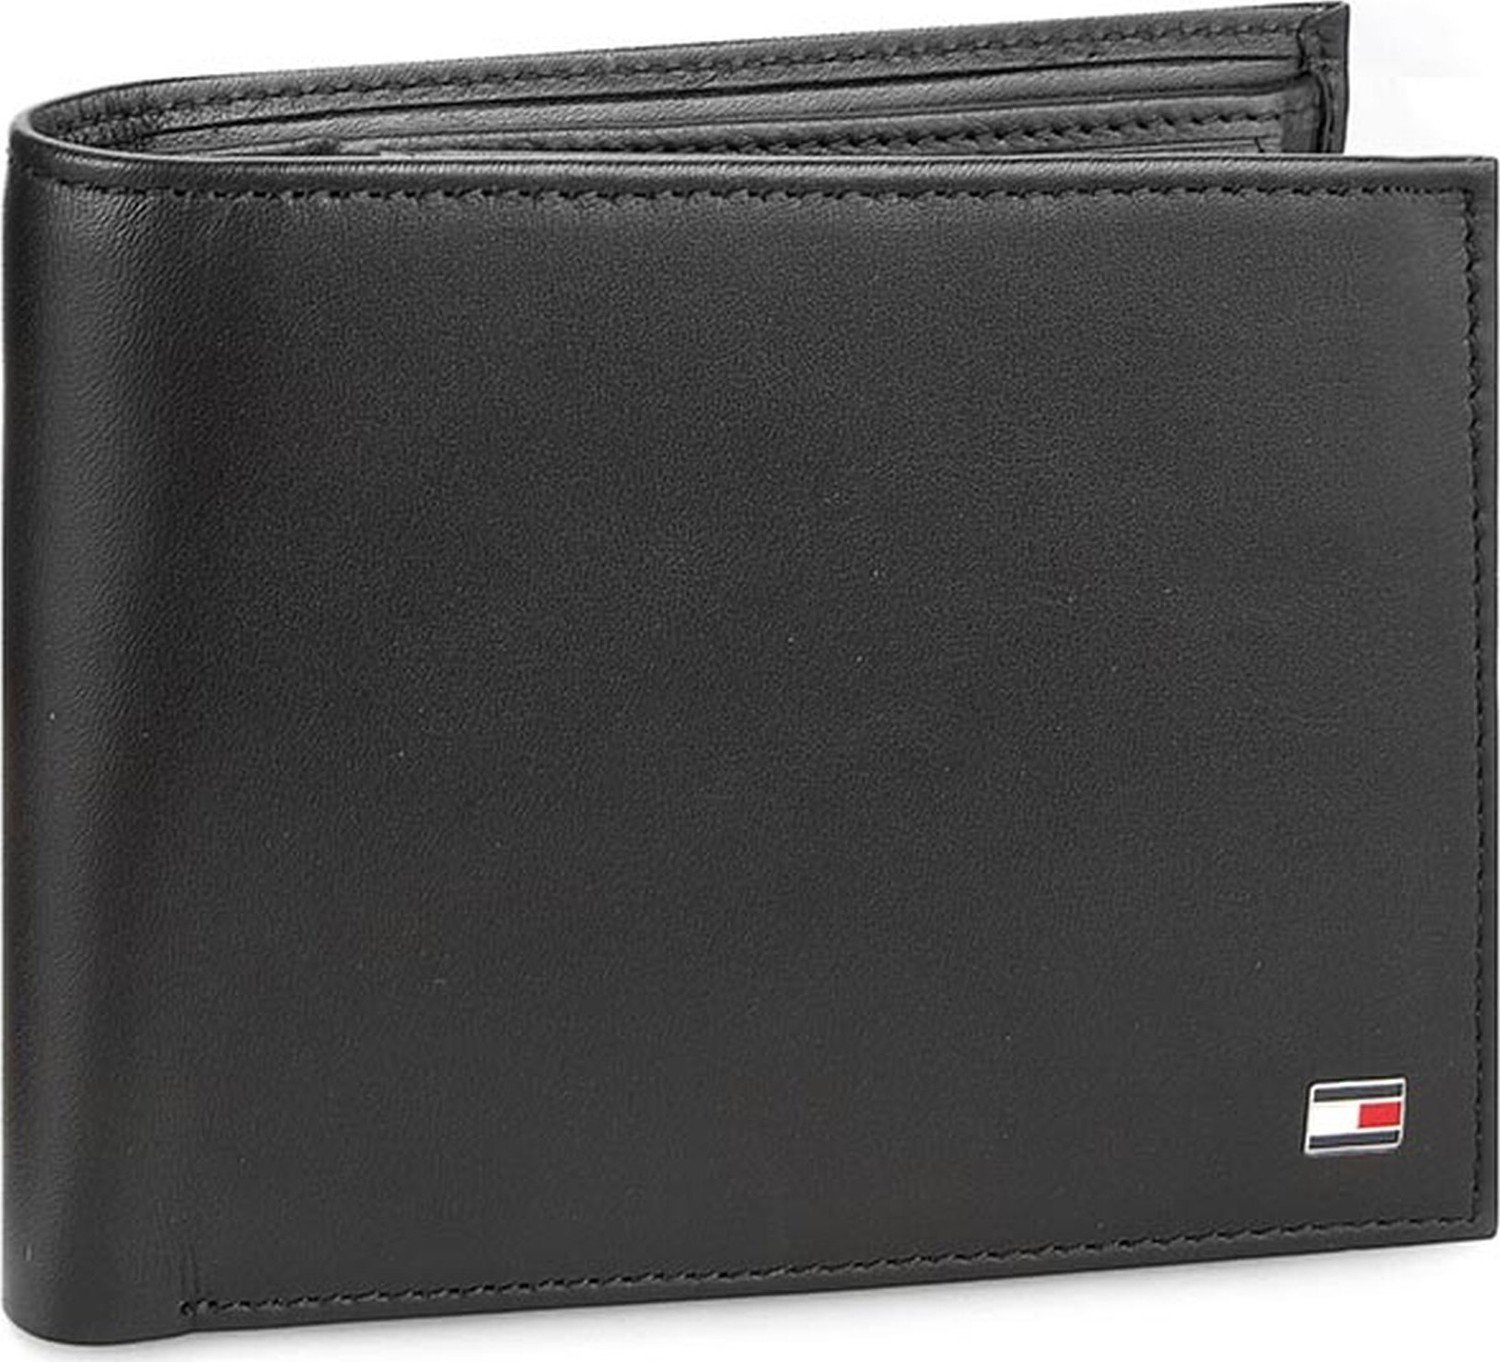 Velká pánská peněženka Tommy Hilfiger Eton Cc Flap And Coin Pocket AM0AM00652 002